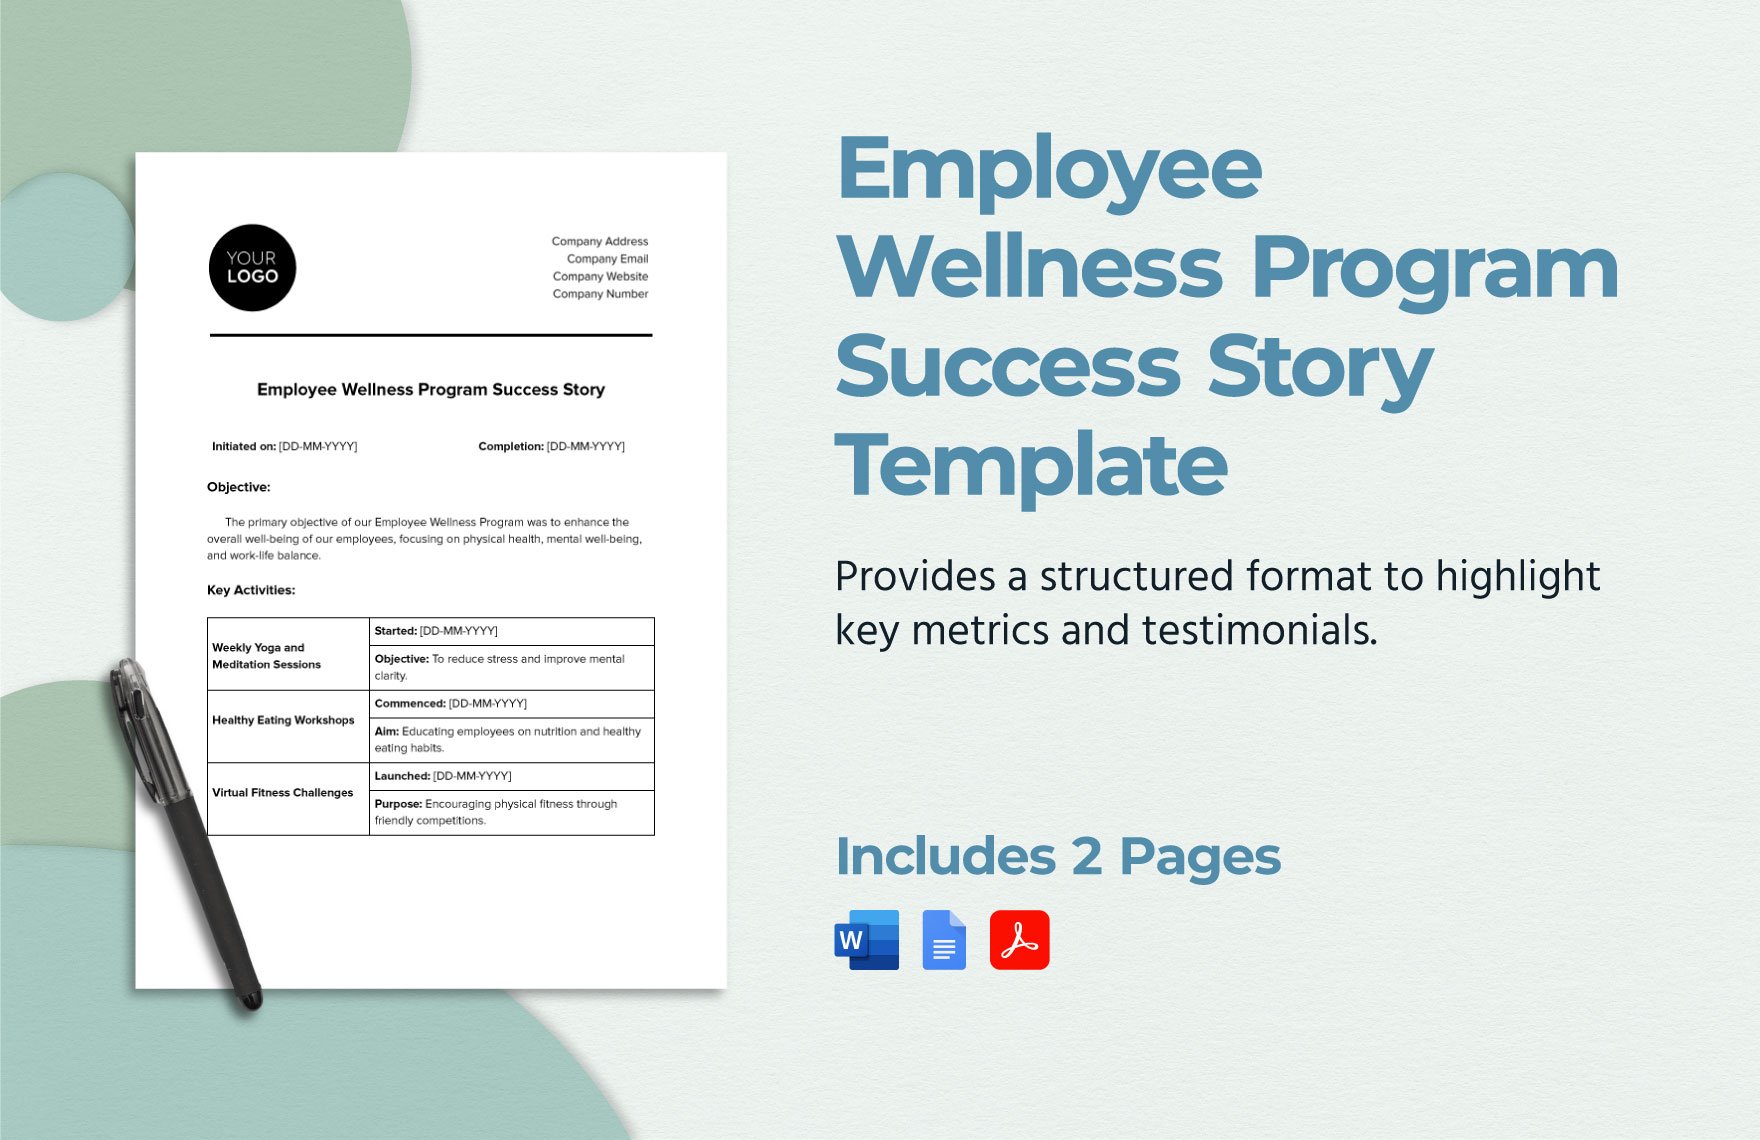 Employee Wellness Program Success Story Template